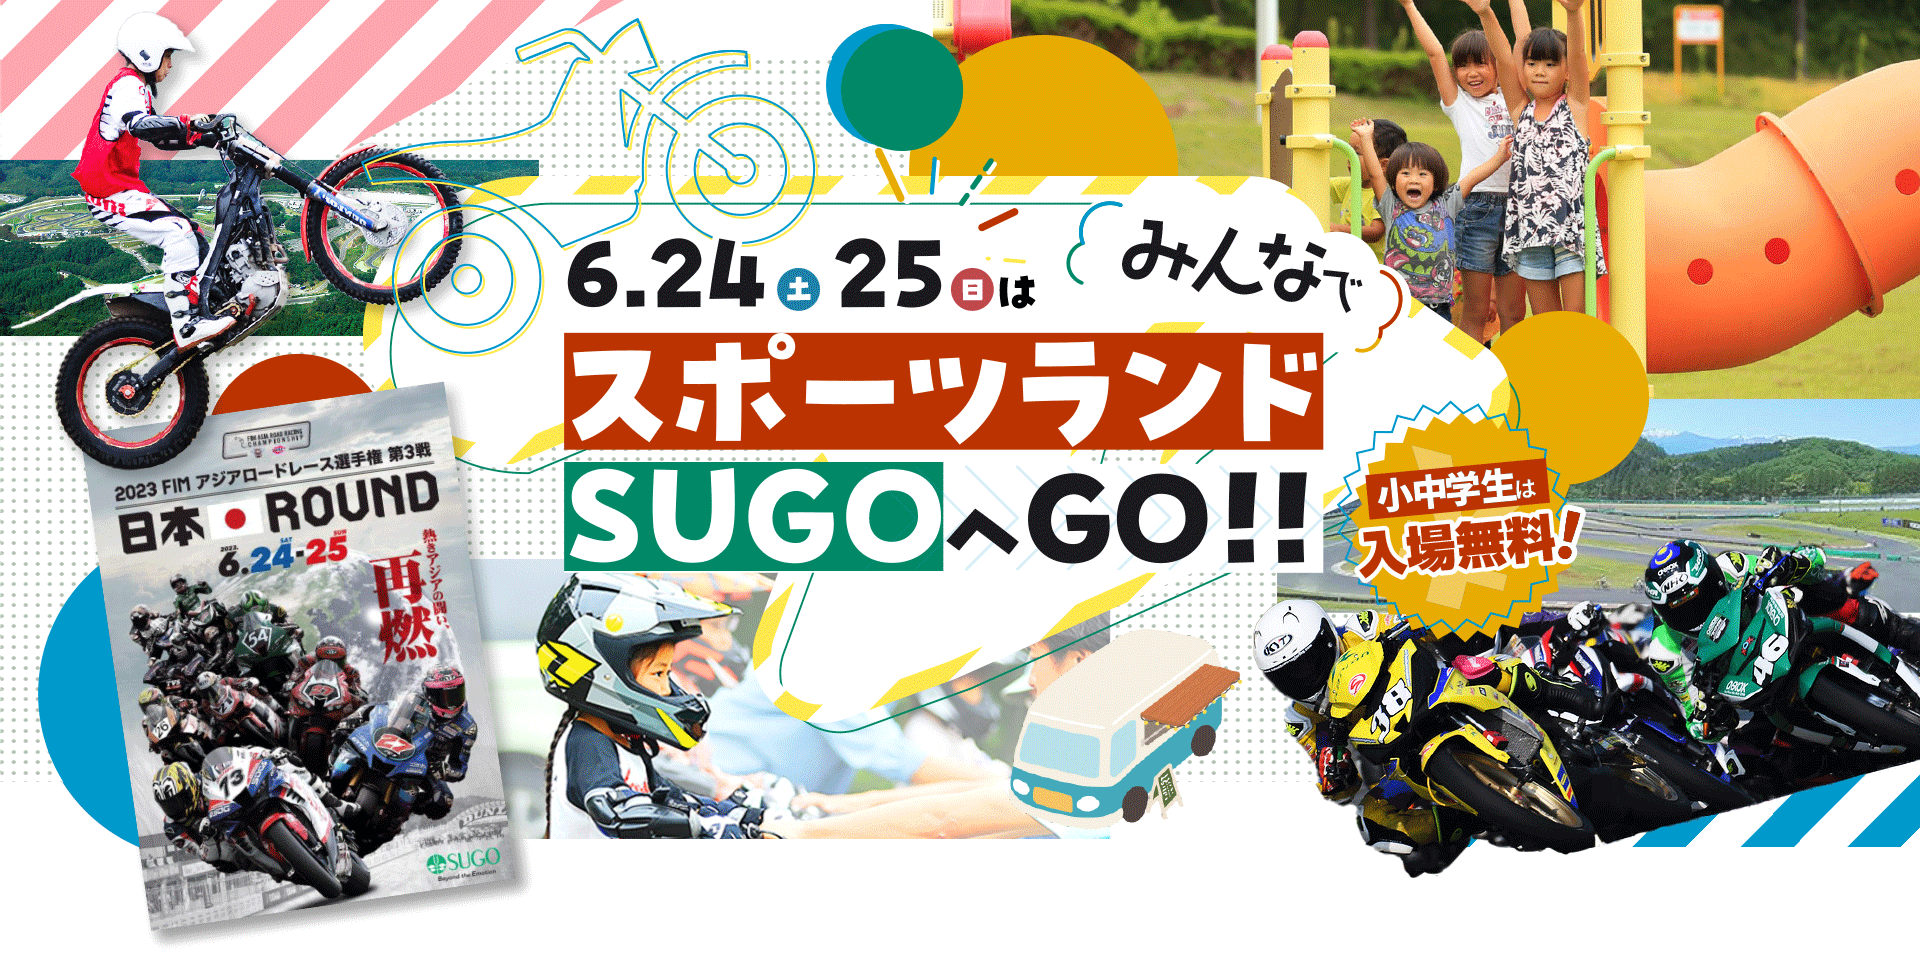 6月24日(土)25日(日)はみんなでスポーツランドSUGOへGO!!